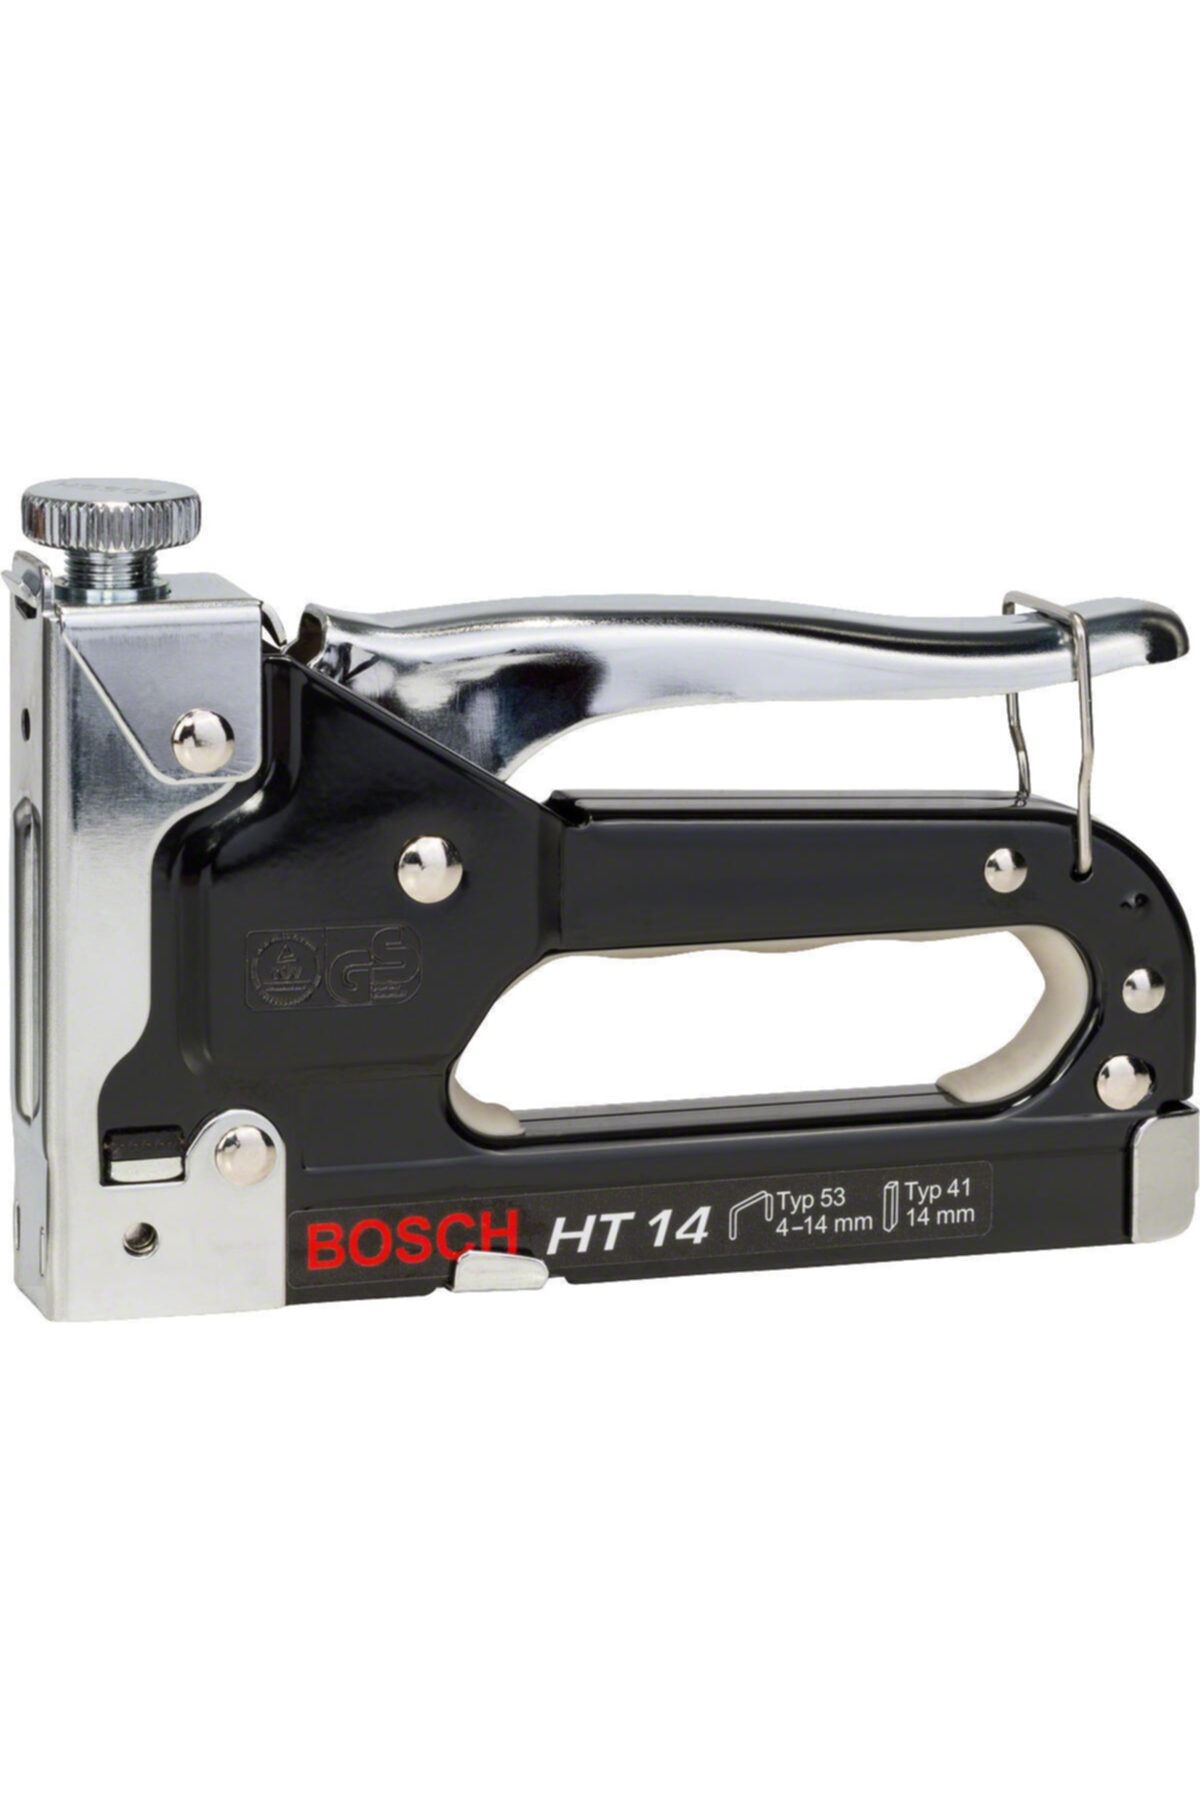 Bosch Ht14 Elle Sıkmalı Mekanik Zımba - 2609255859